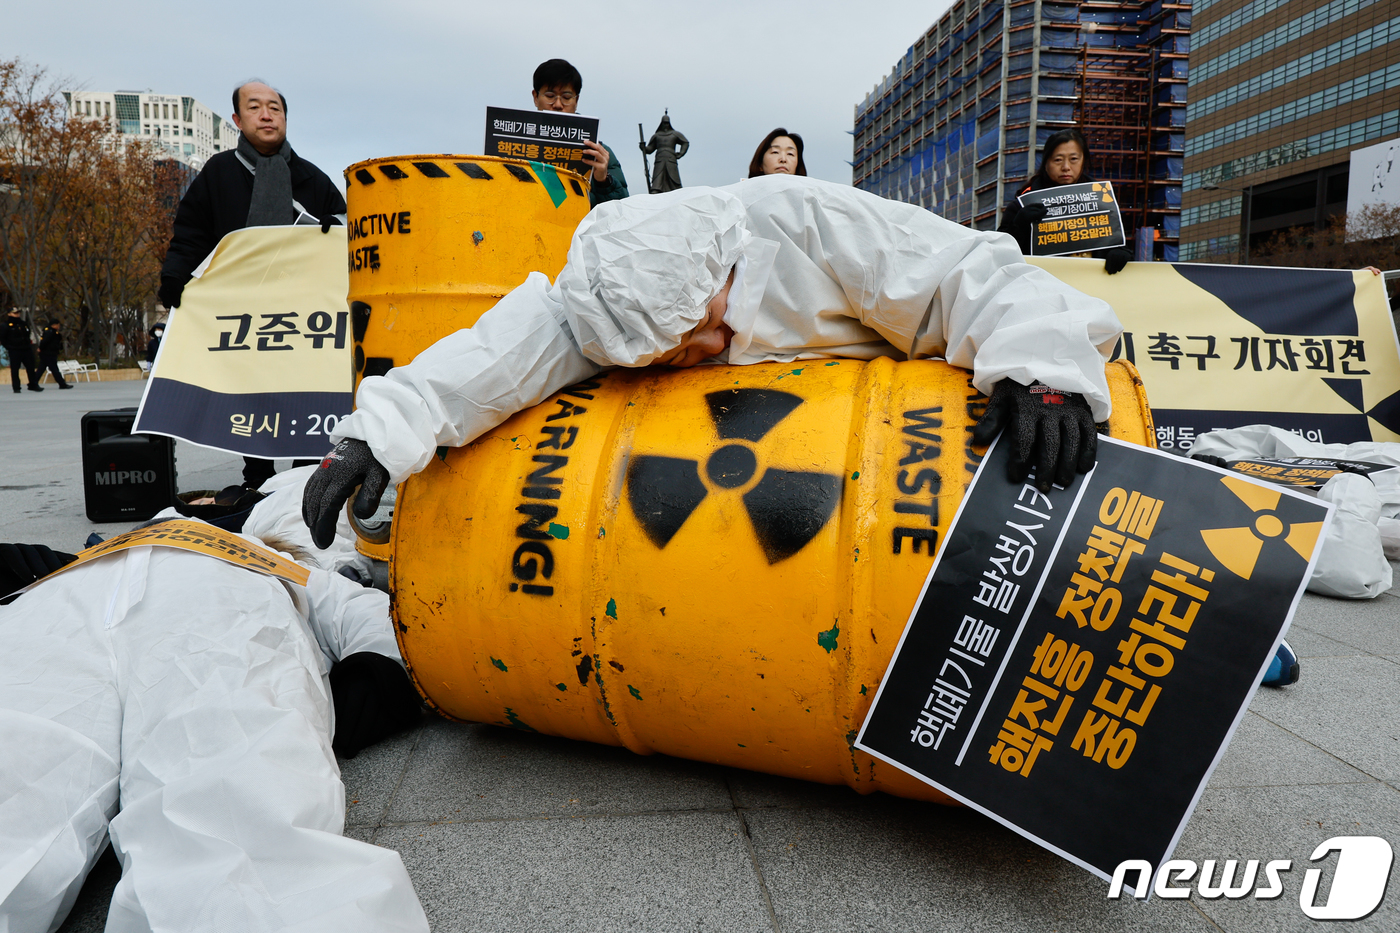 (서울=뉴스1) 안은나 기자 = 탈핵시민행동, 종교환경회의 회원들이 29일 오전 서울 종로구 광화문 광장에서 '고준위방사성폐기물특별법' 폐기를 촉구하며 쌓여있는 핵폐기물 위에 놓여 …